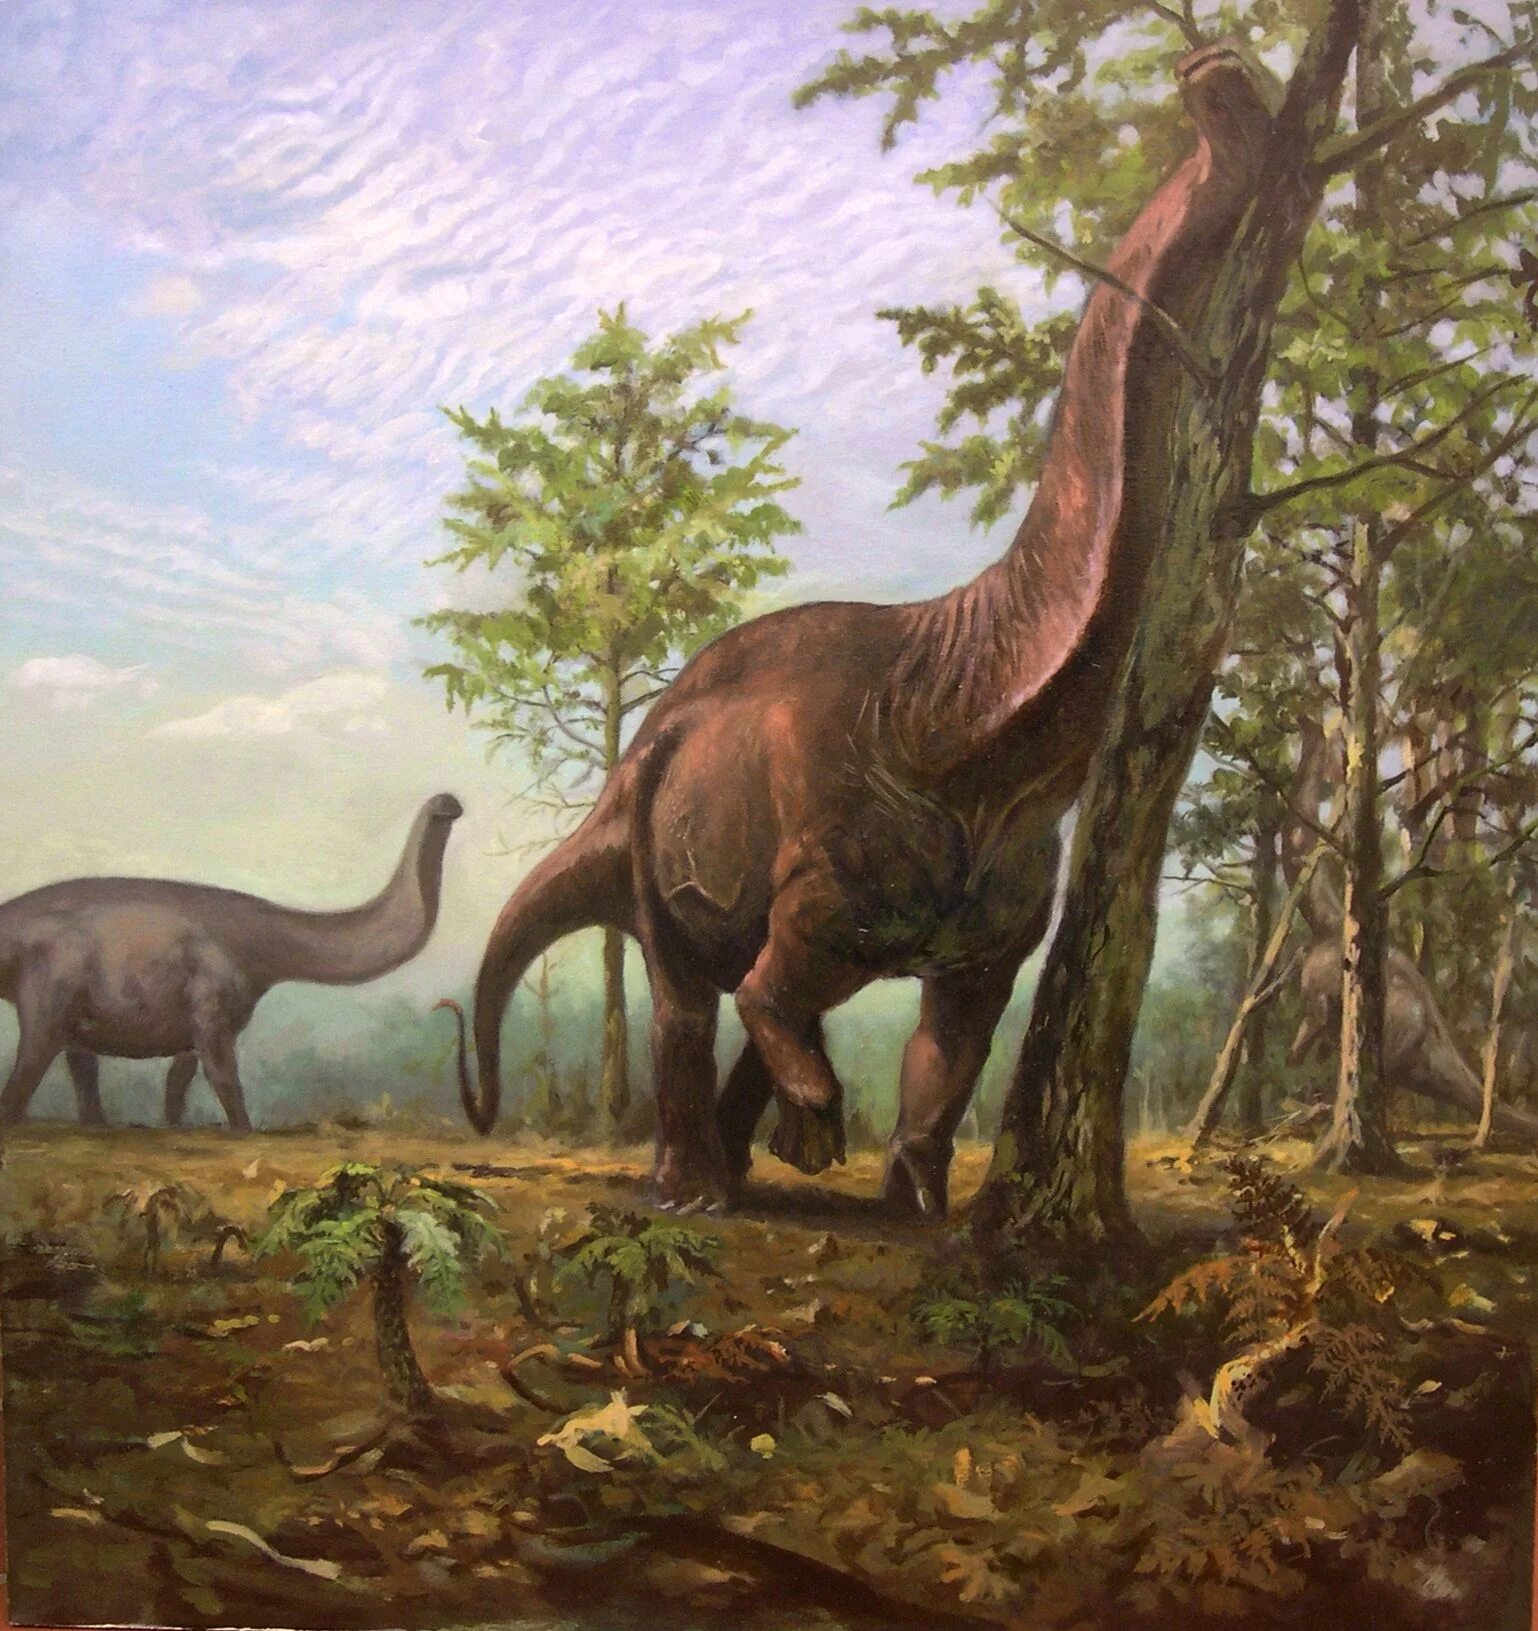 Зауроподы. Апатозавр Диплодок Бронтозавр. Травоядные динозавры зауроподы. Мезозойская Эра Брахиозавры. Динозавры художественный